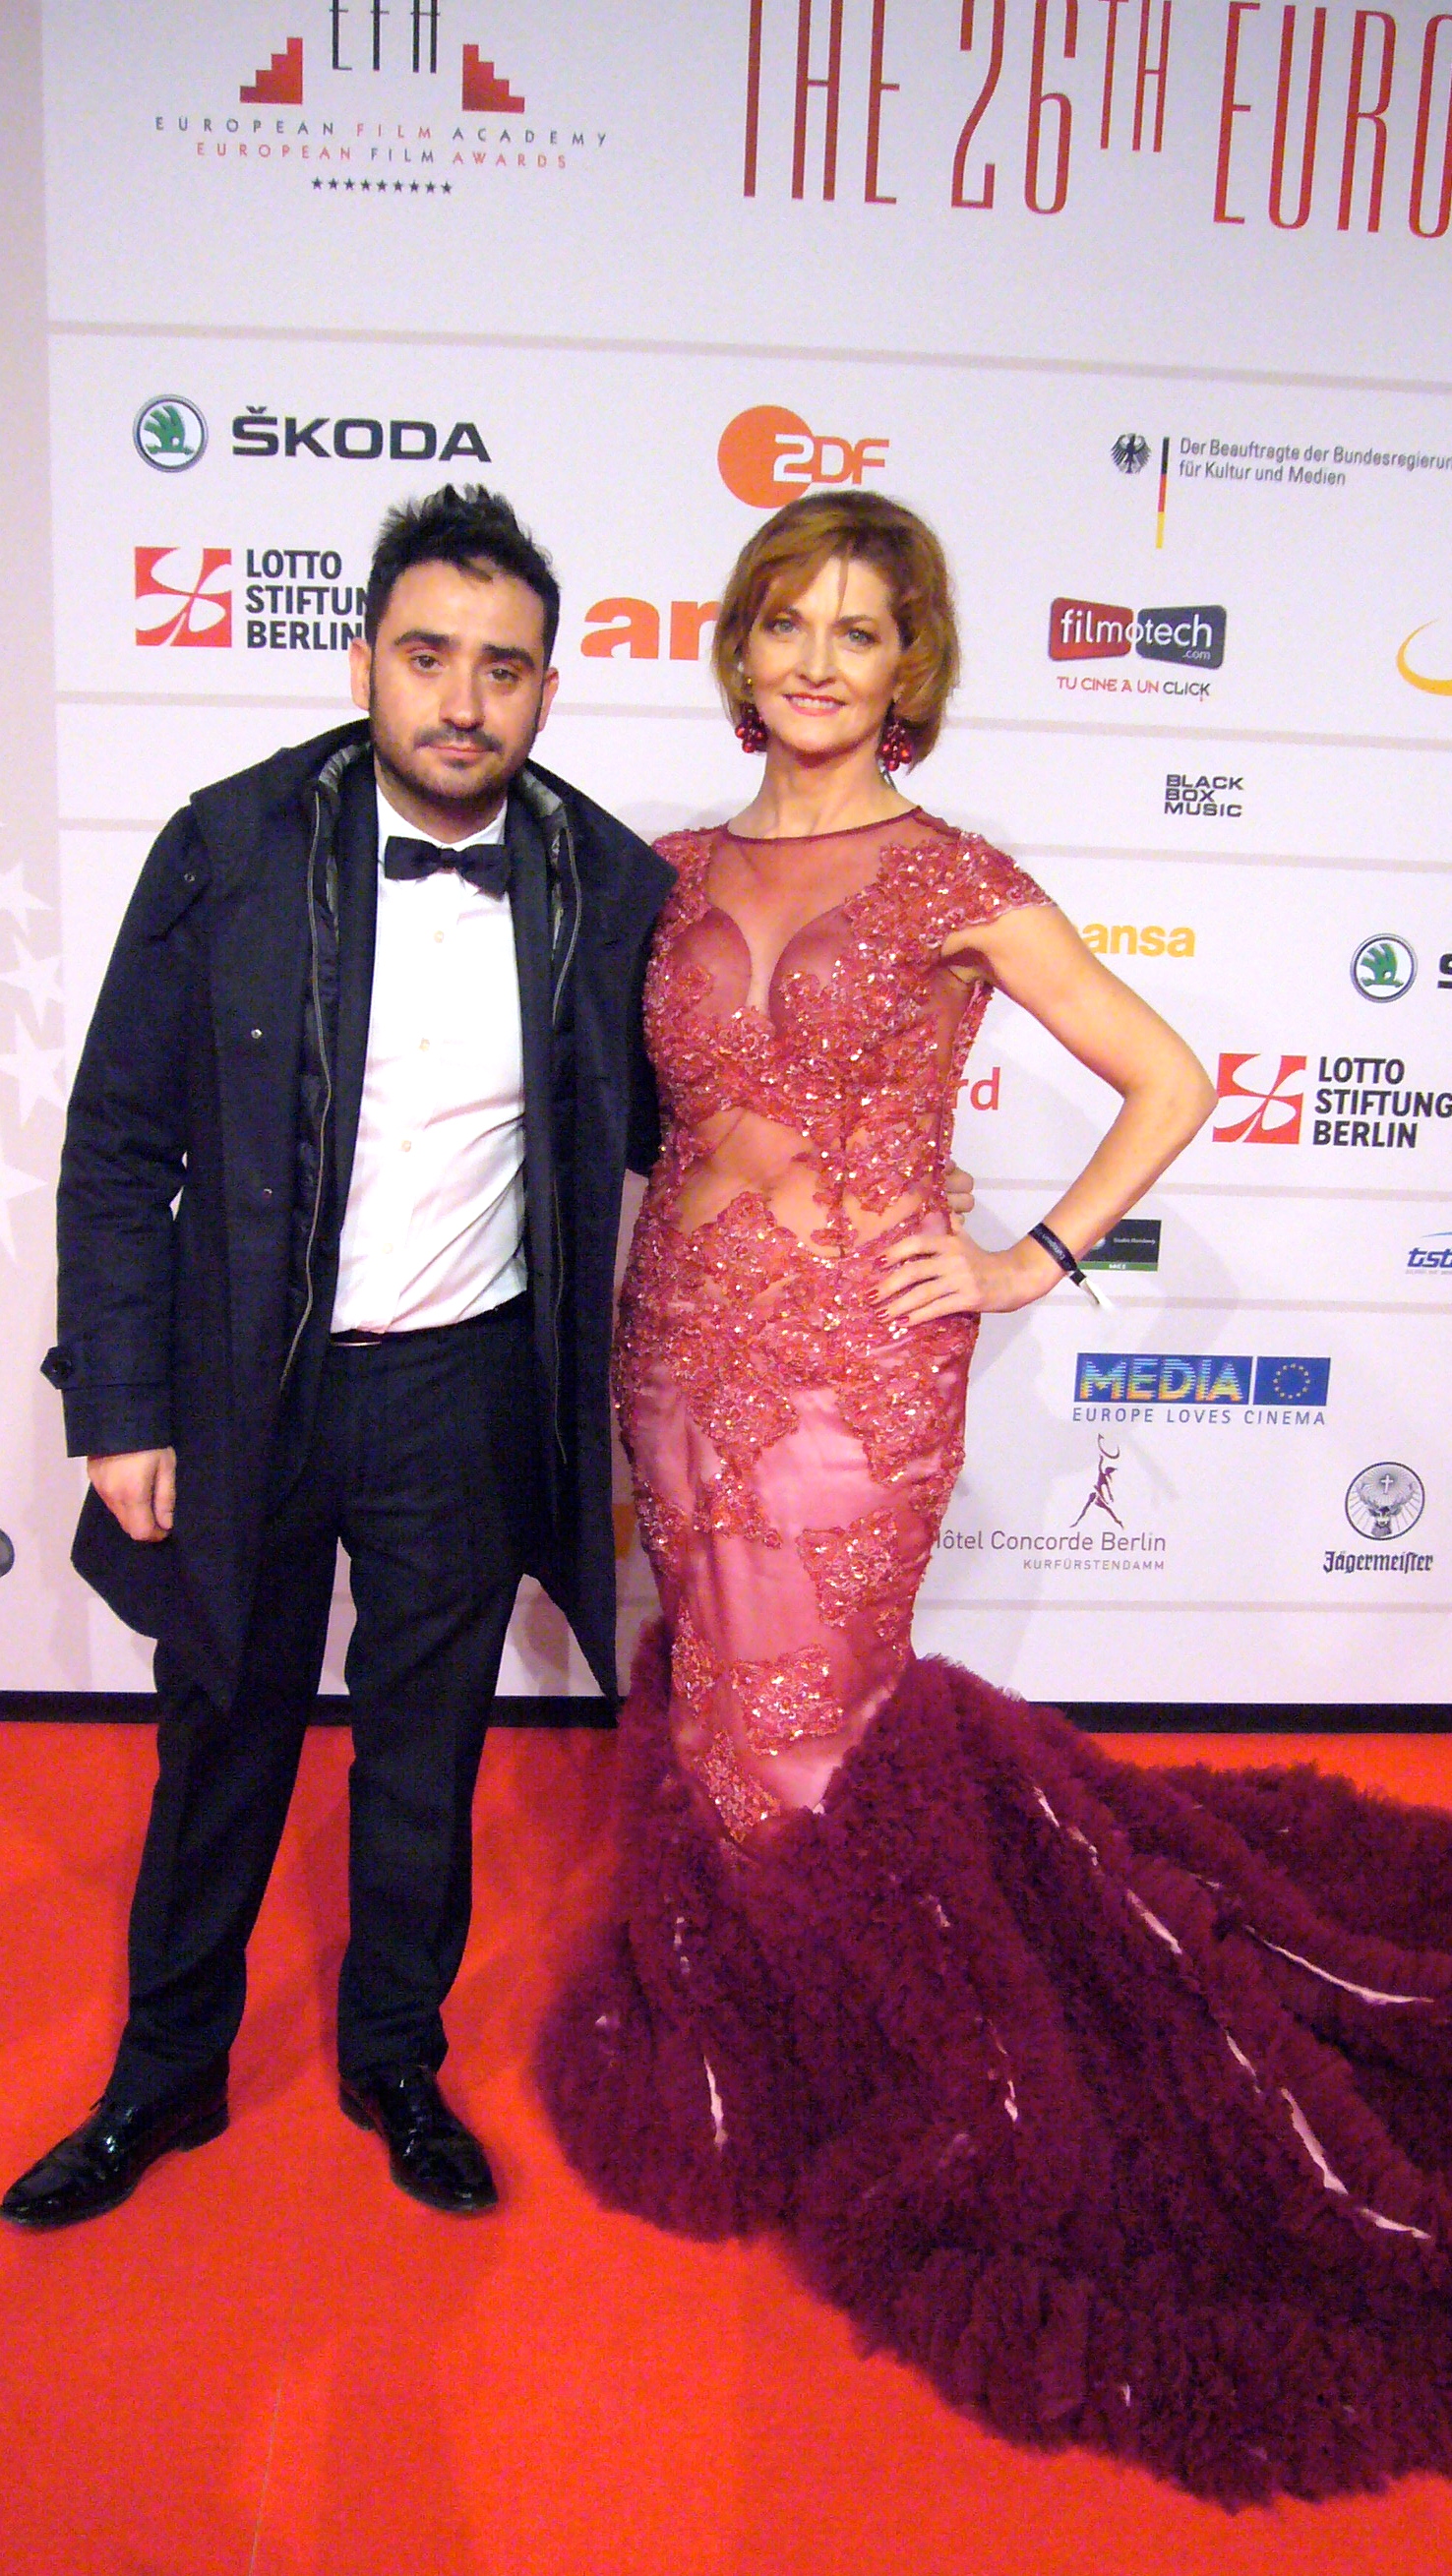 Director J.A. Bayona and Actress Azucena De La Fuente at the European Film Awards in Berlin